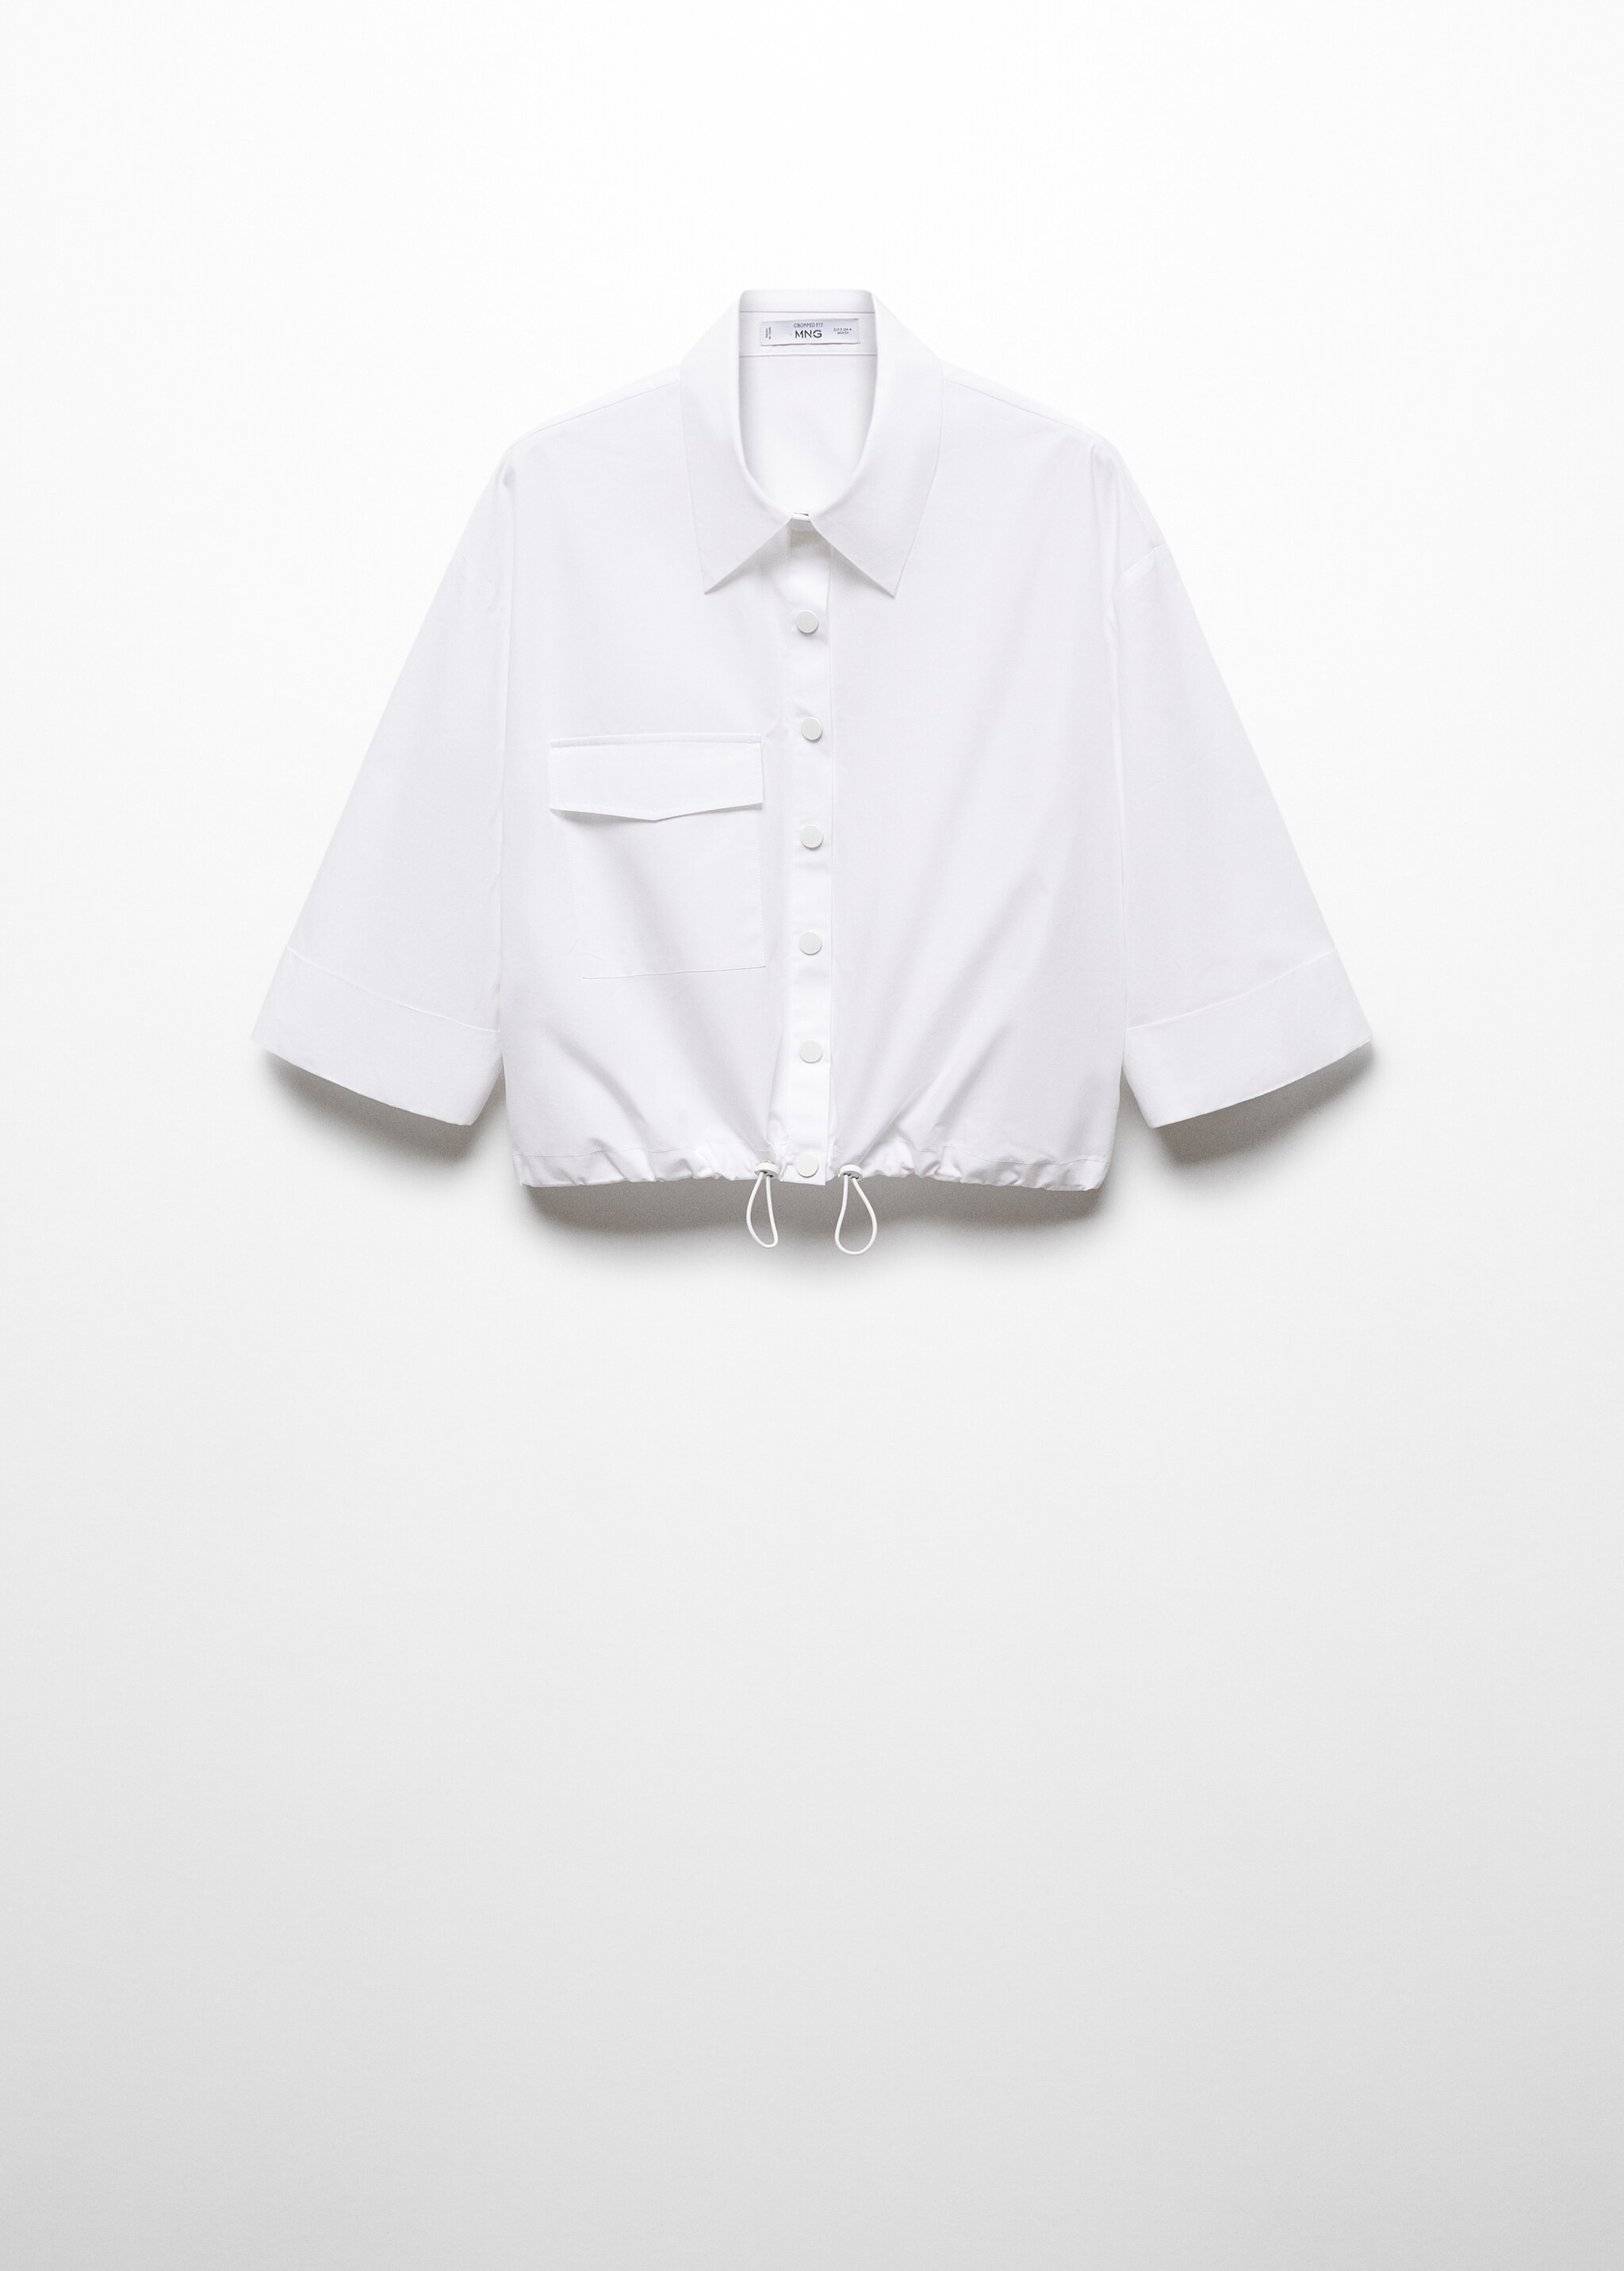 Camisa algodón bajo ajustable - Artículo sin modelo